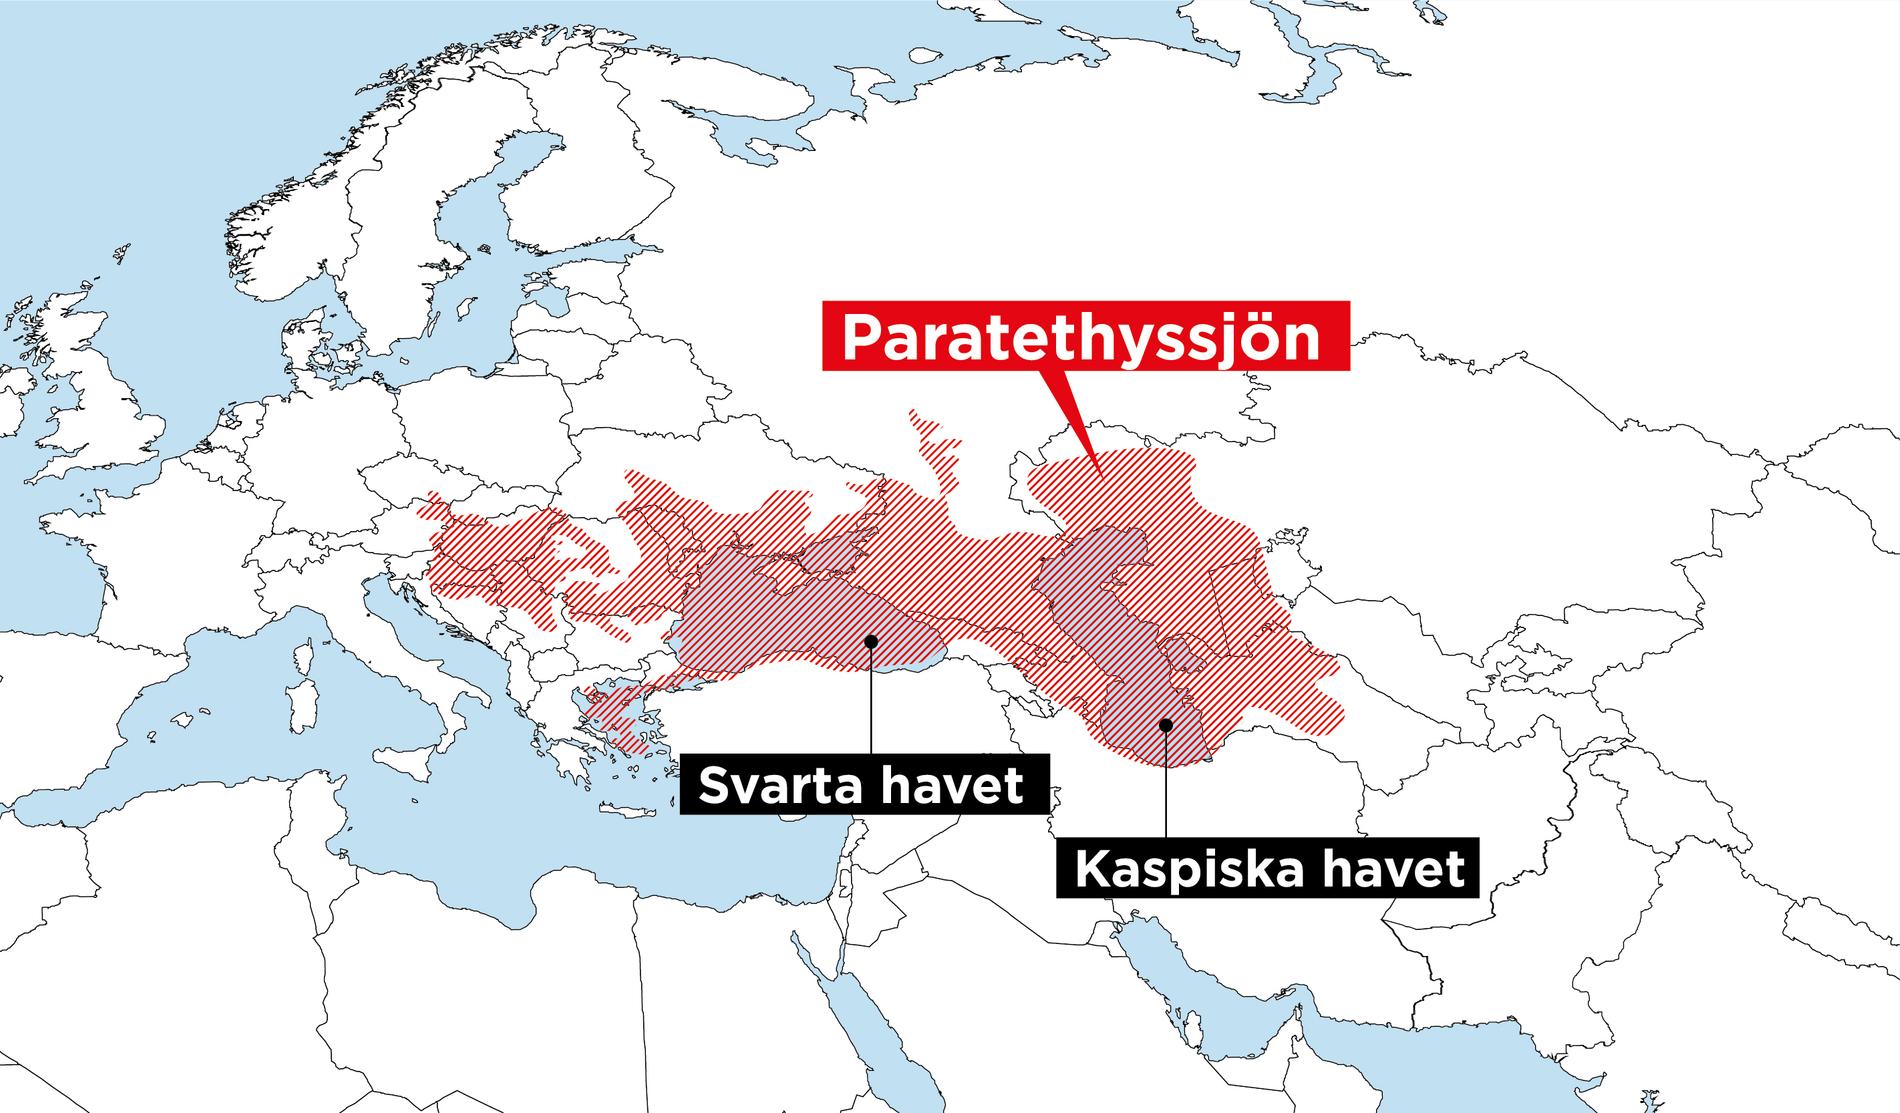 Paratethyssjön sträckte sig från Alperna bort mot Kazakstan.